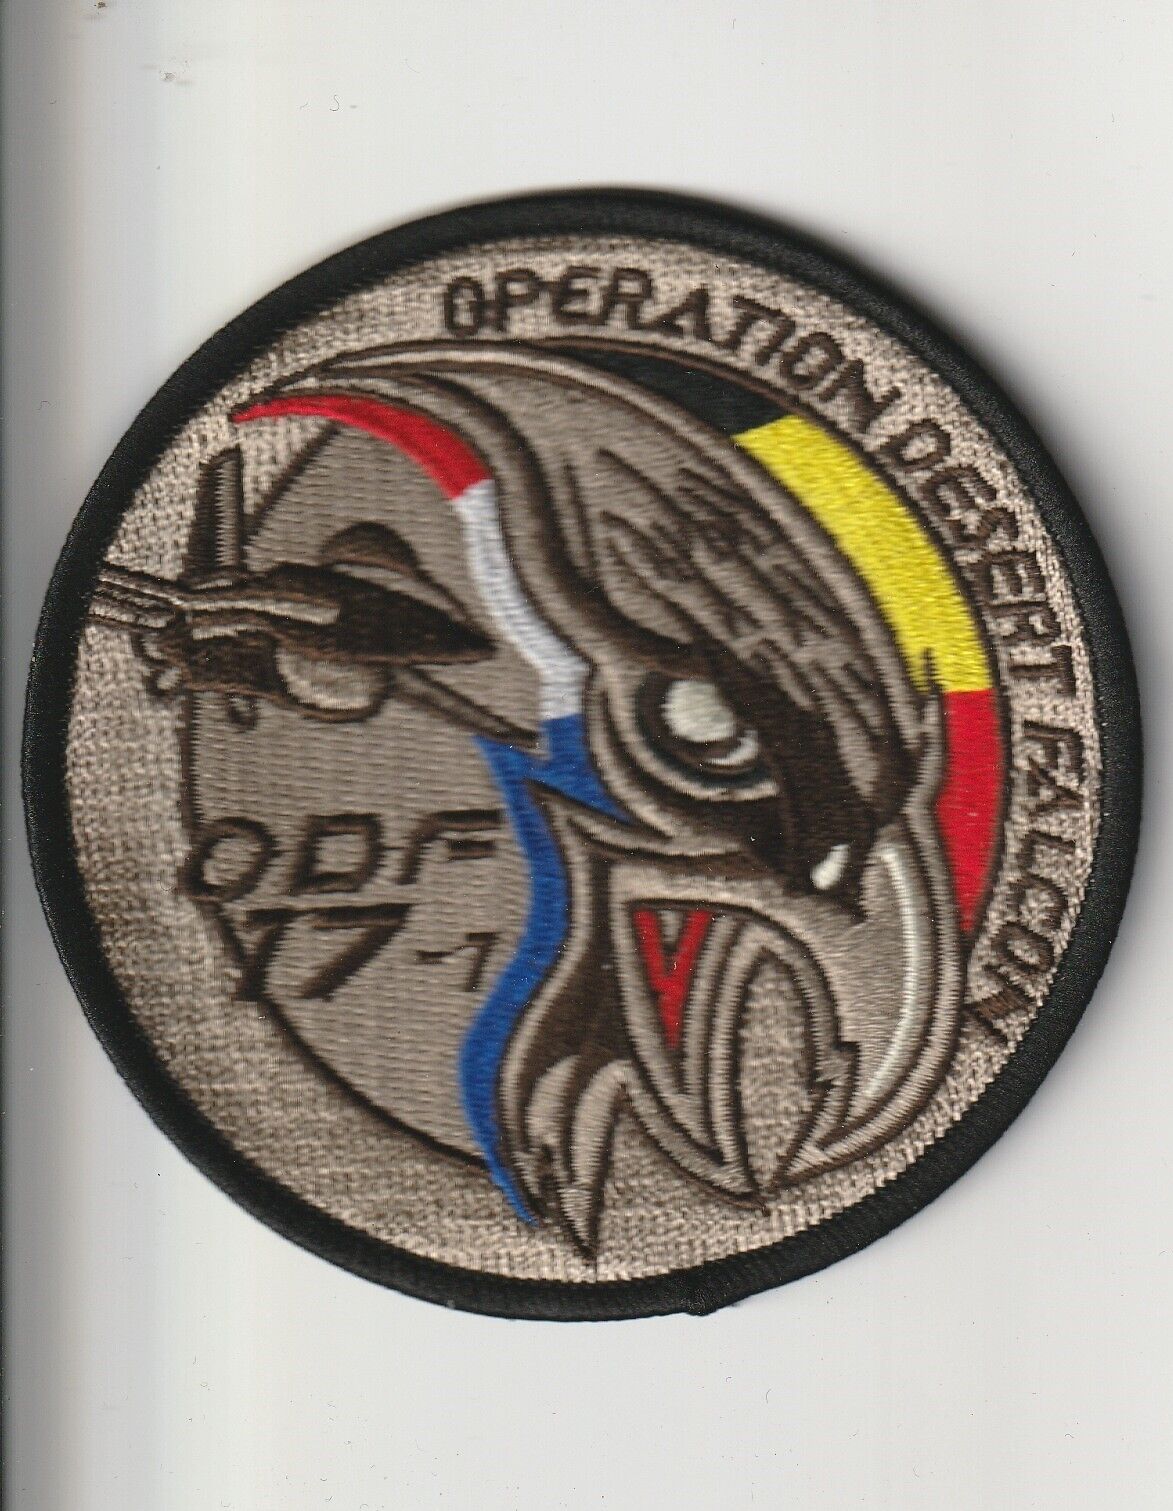 Belgian BAF  Dutch RNLAF air force Operation Dessert Falcon 17-1 F-16 patch